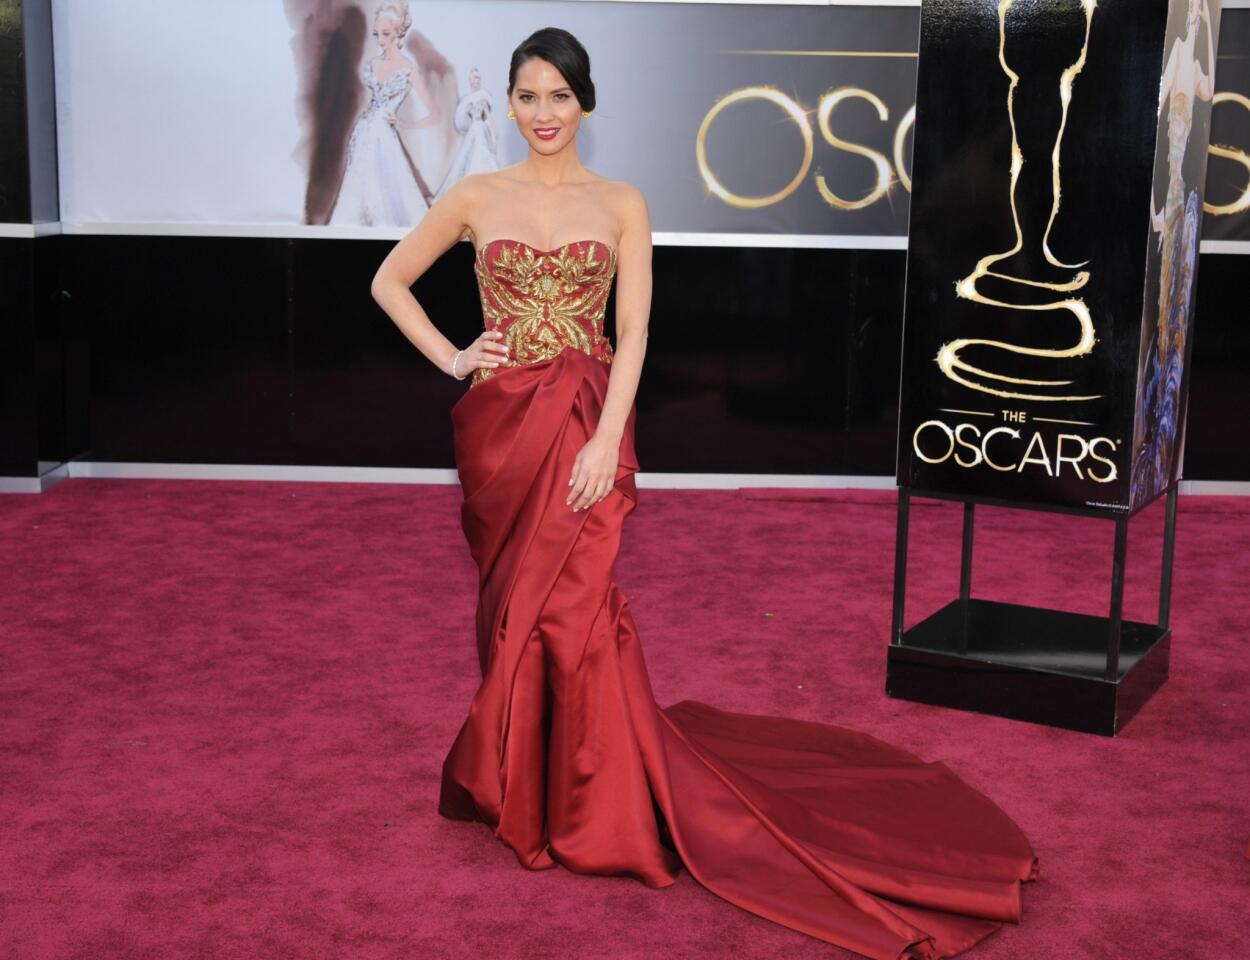 Oscars 2013 arrivals: Olivia Munn